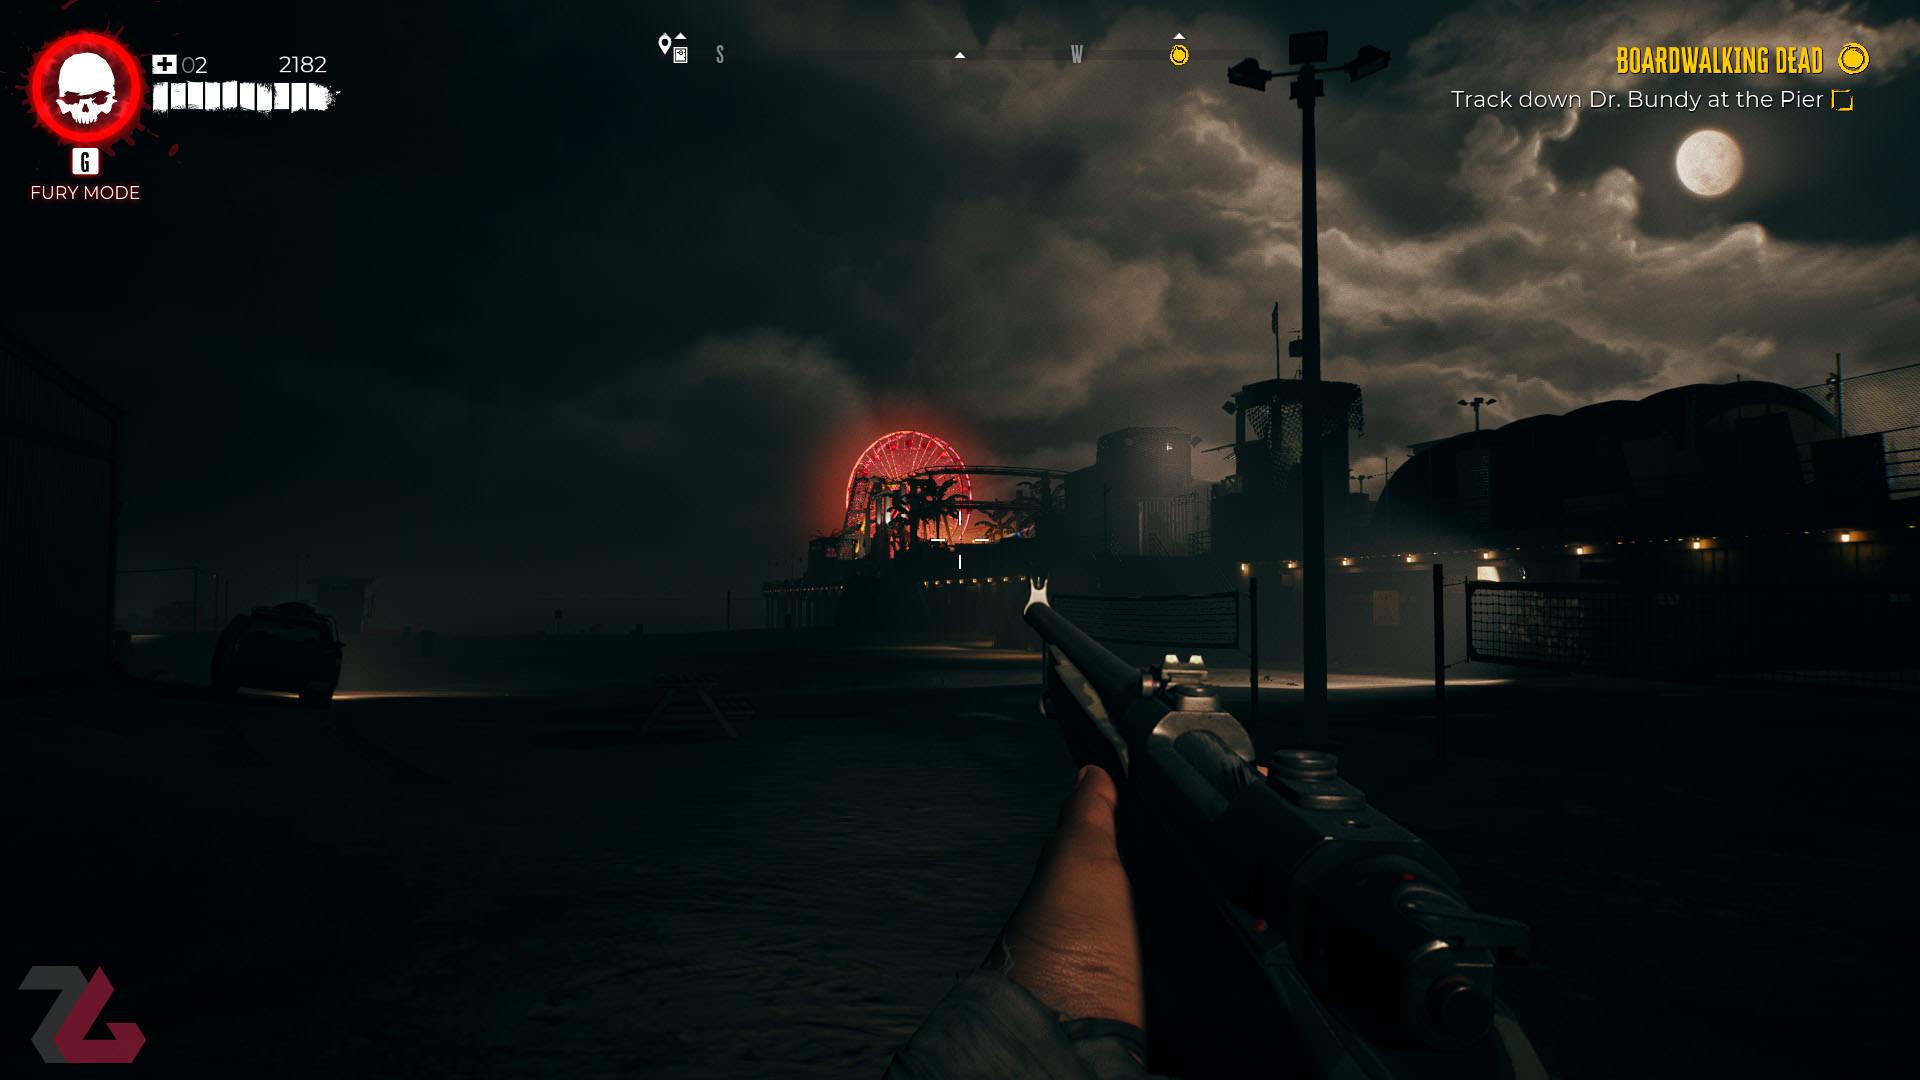 نشانه گیری با اسلحه در شب در بازی Dead Island 2